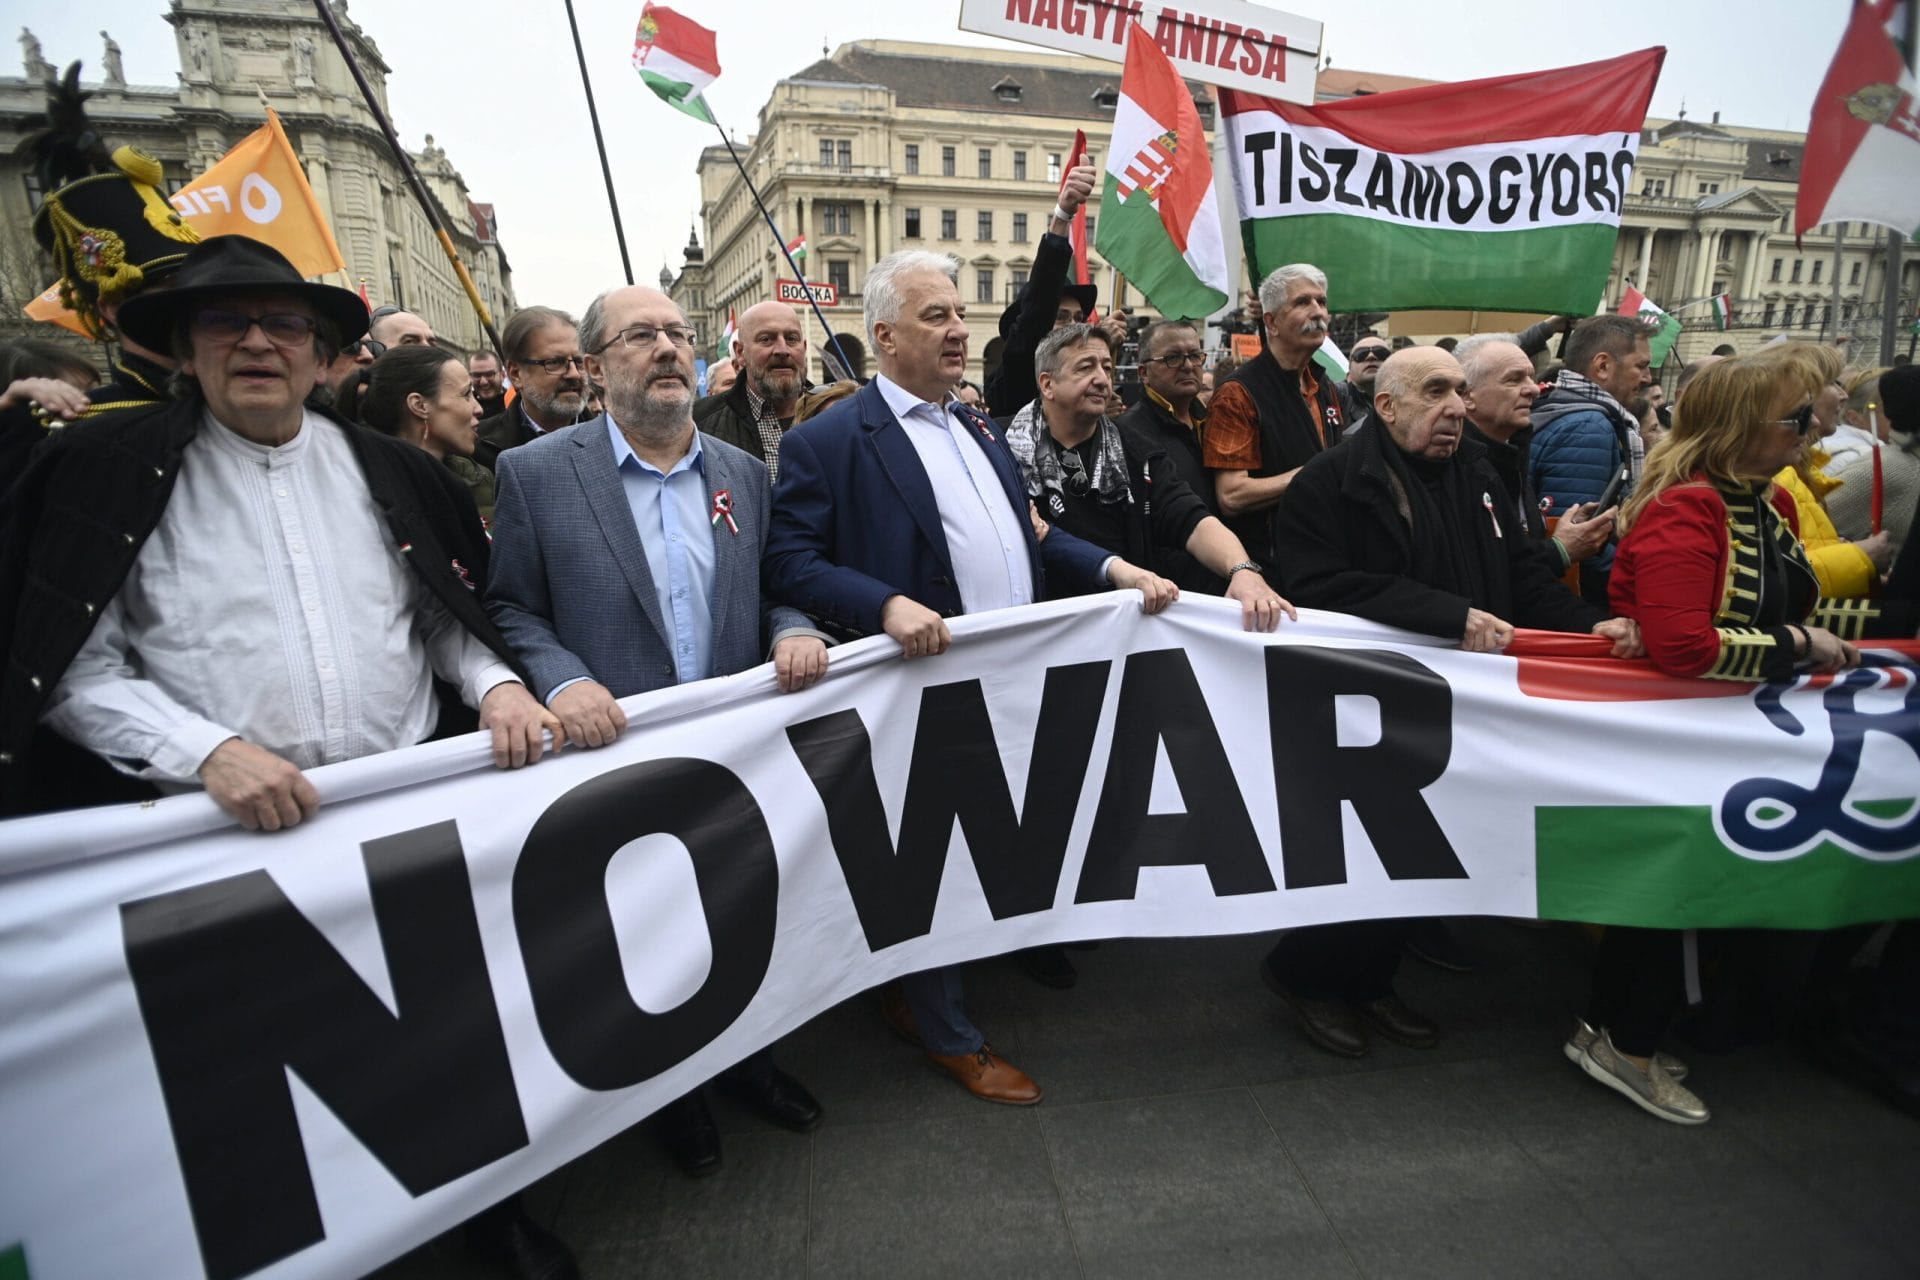 Az idők kegyetlenek: Békemenet vagy káosz március 15-én Budapesten?